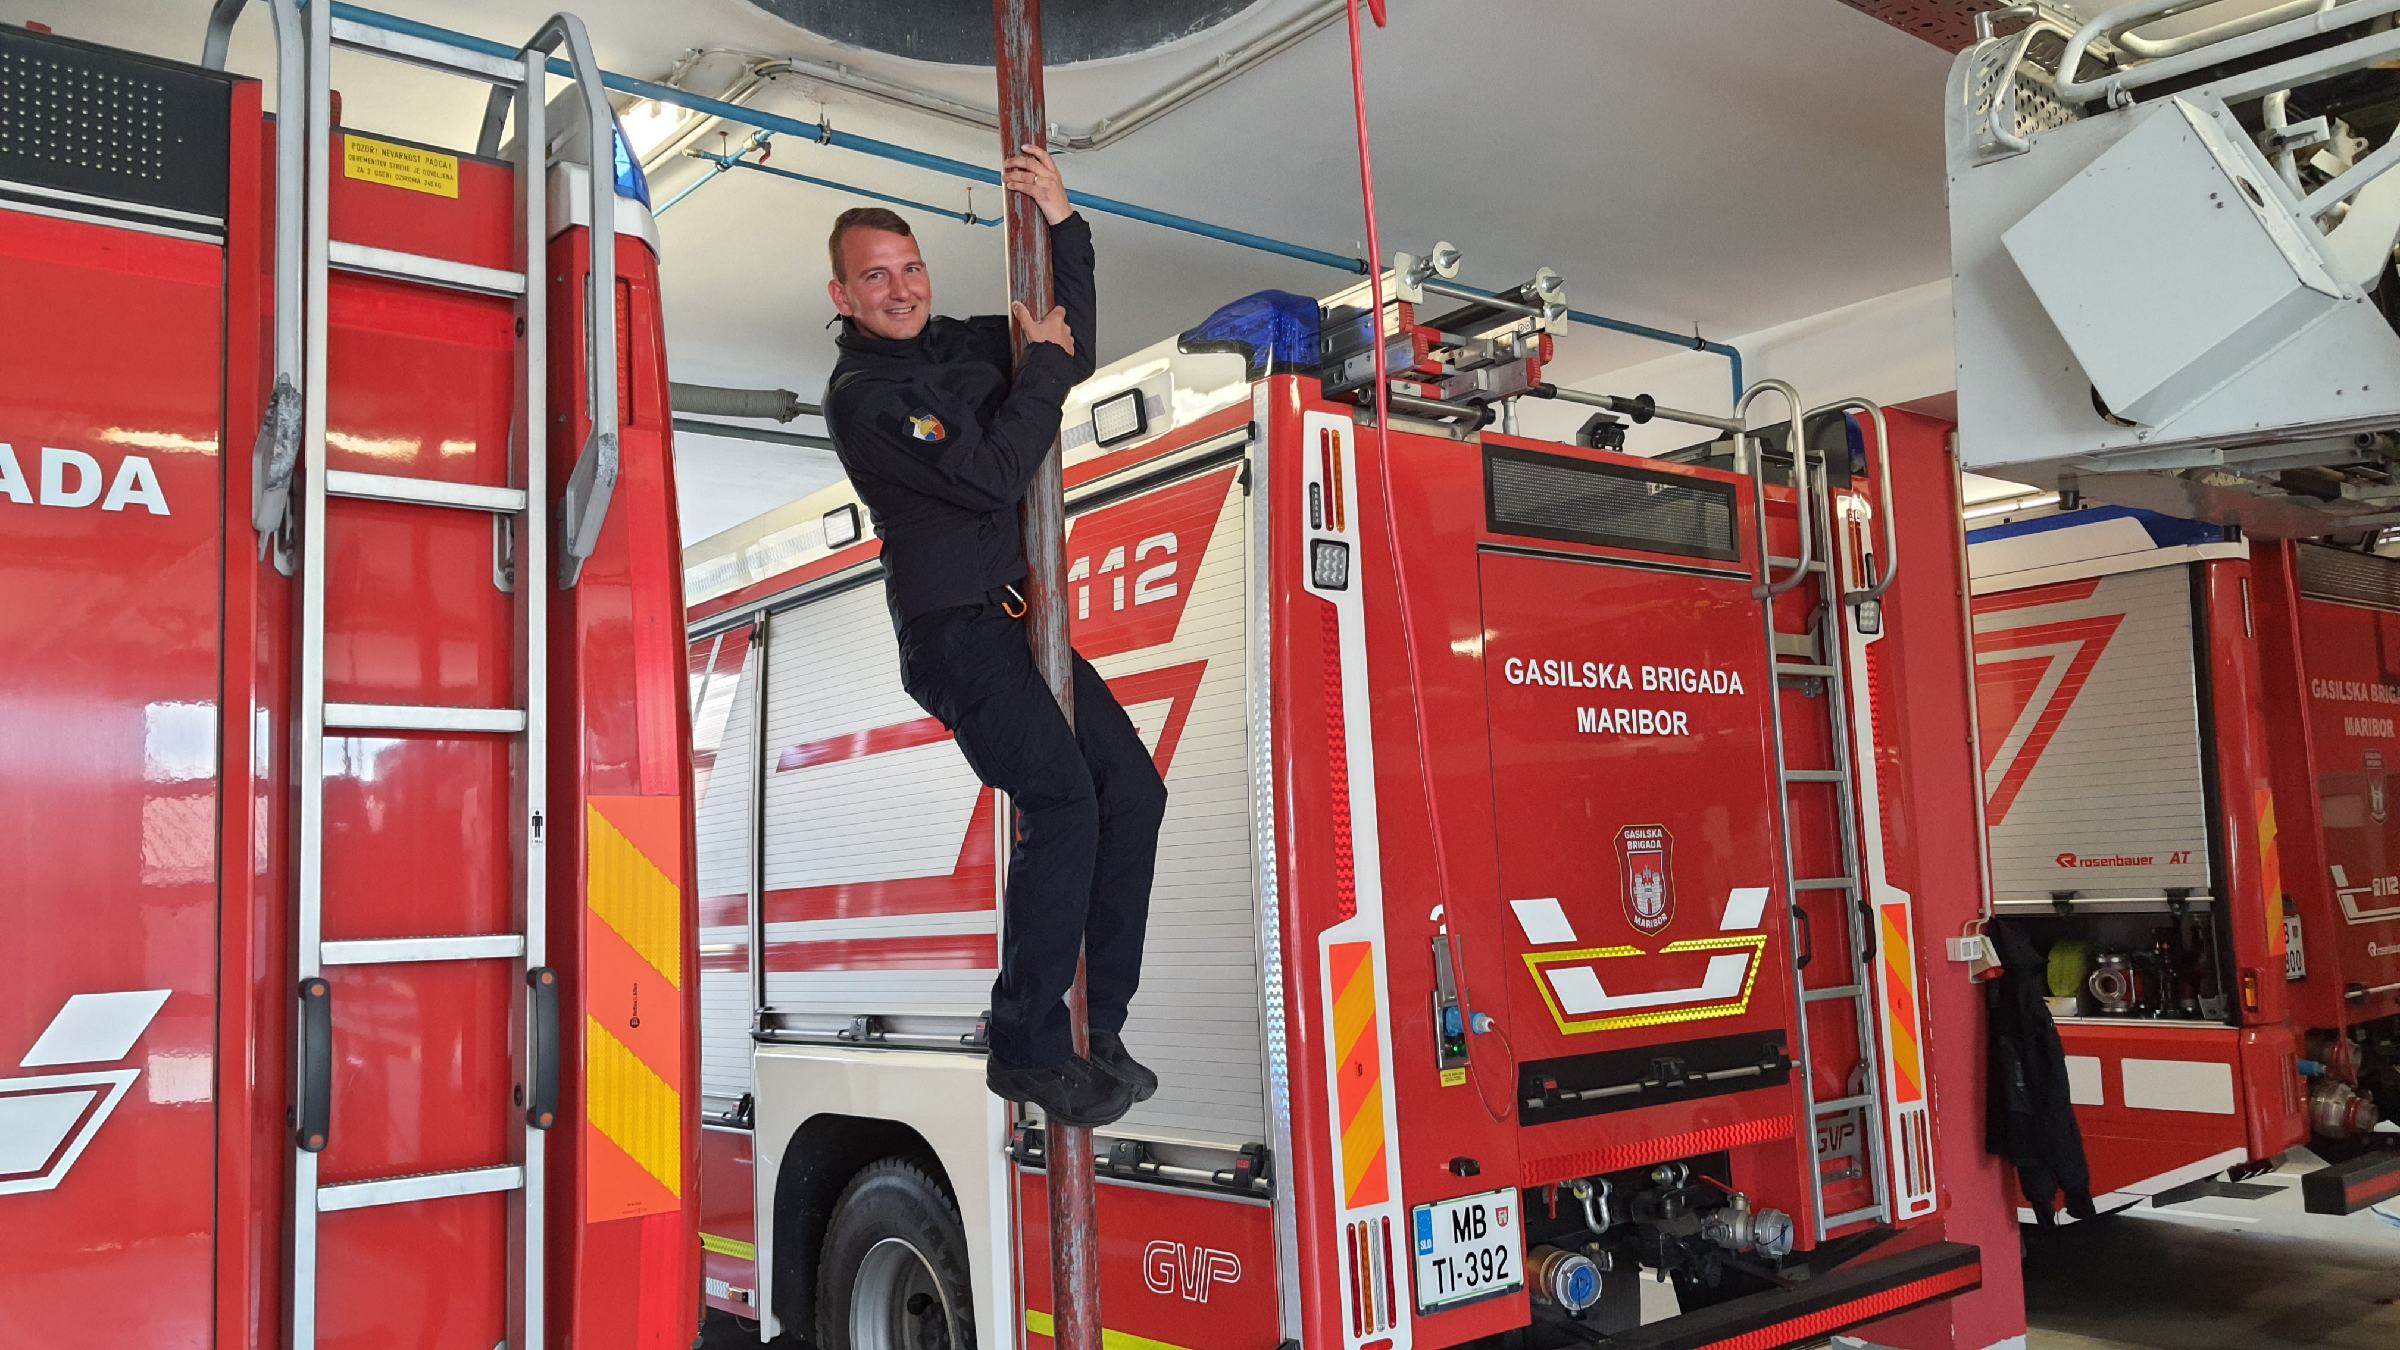 DNEVNA: Muzikant, ki kot poklicni in prostovoljni gasilec vsak dan rešuje življenja